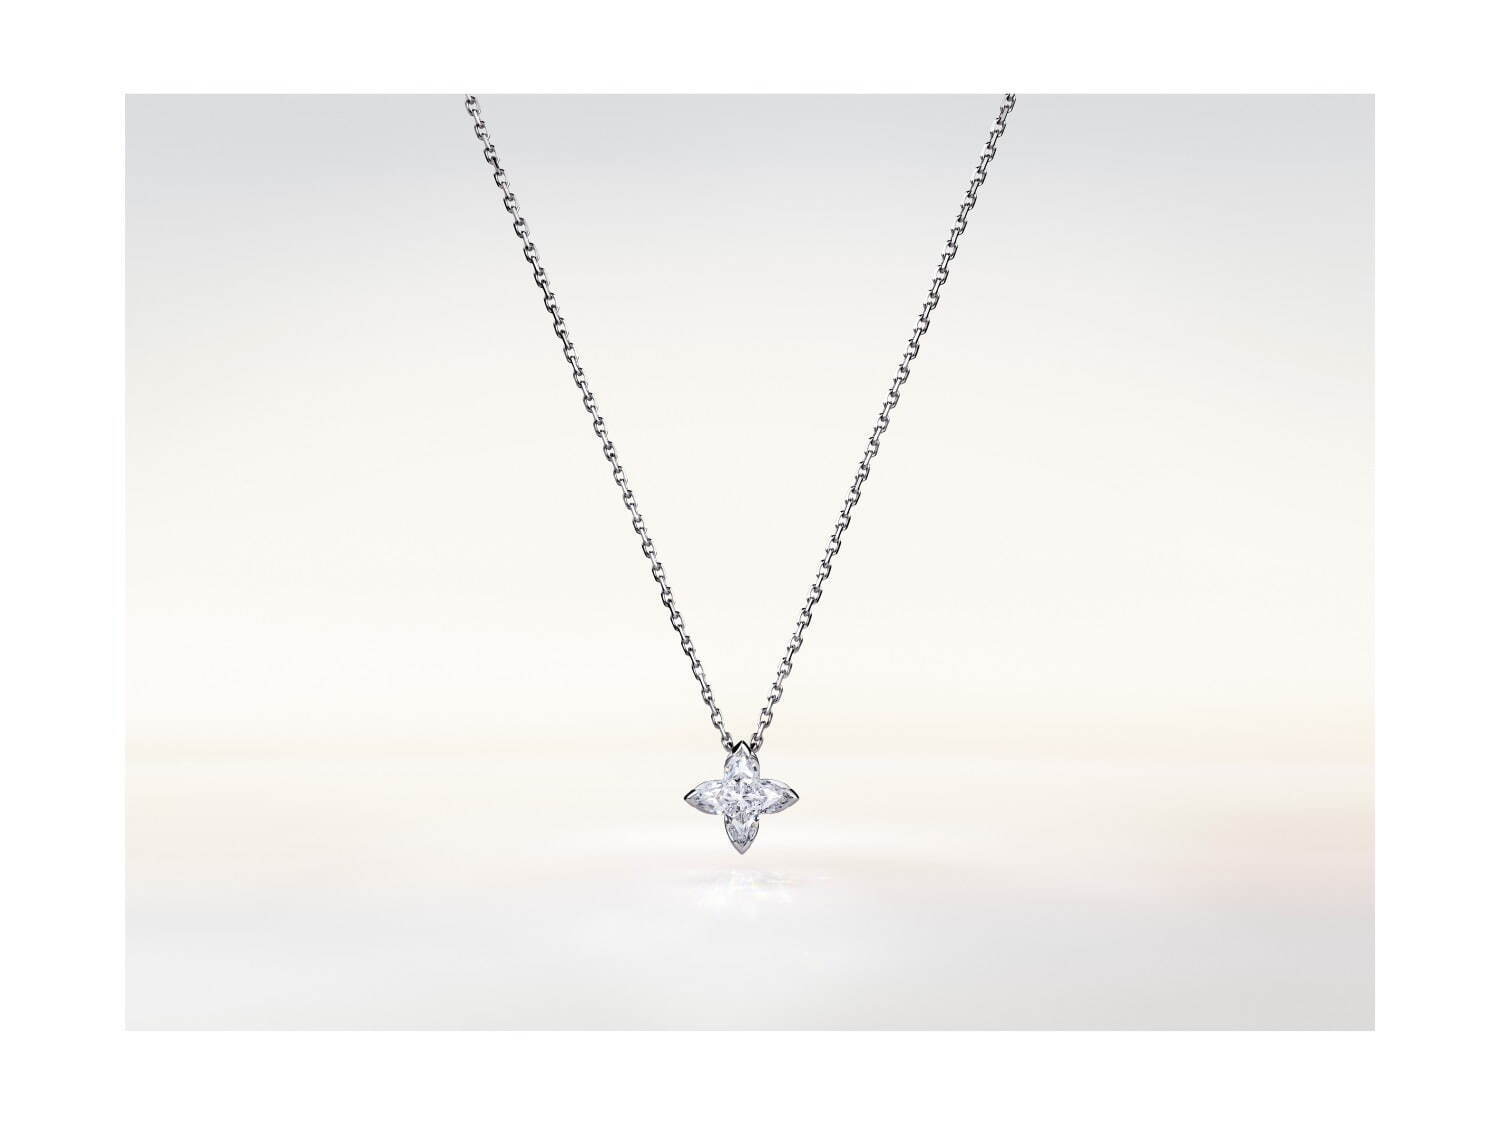 ルイ・ヴィトン“モノグラム・フラワー”を表現したダイヤモンドネックレス